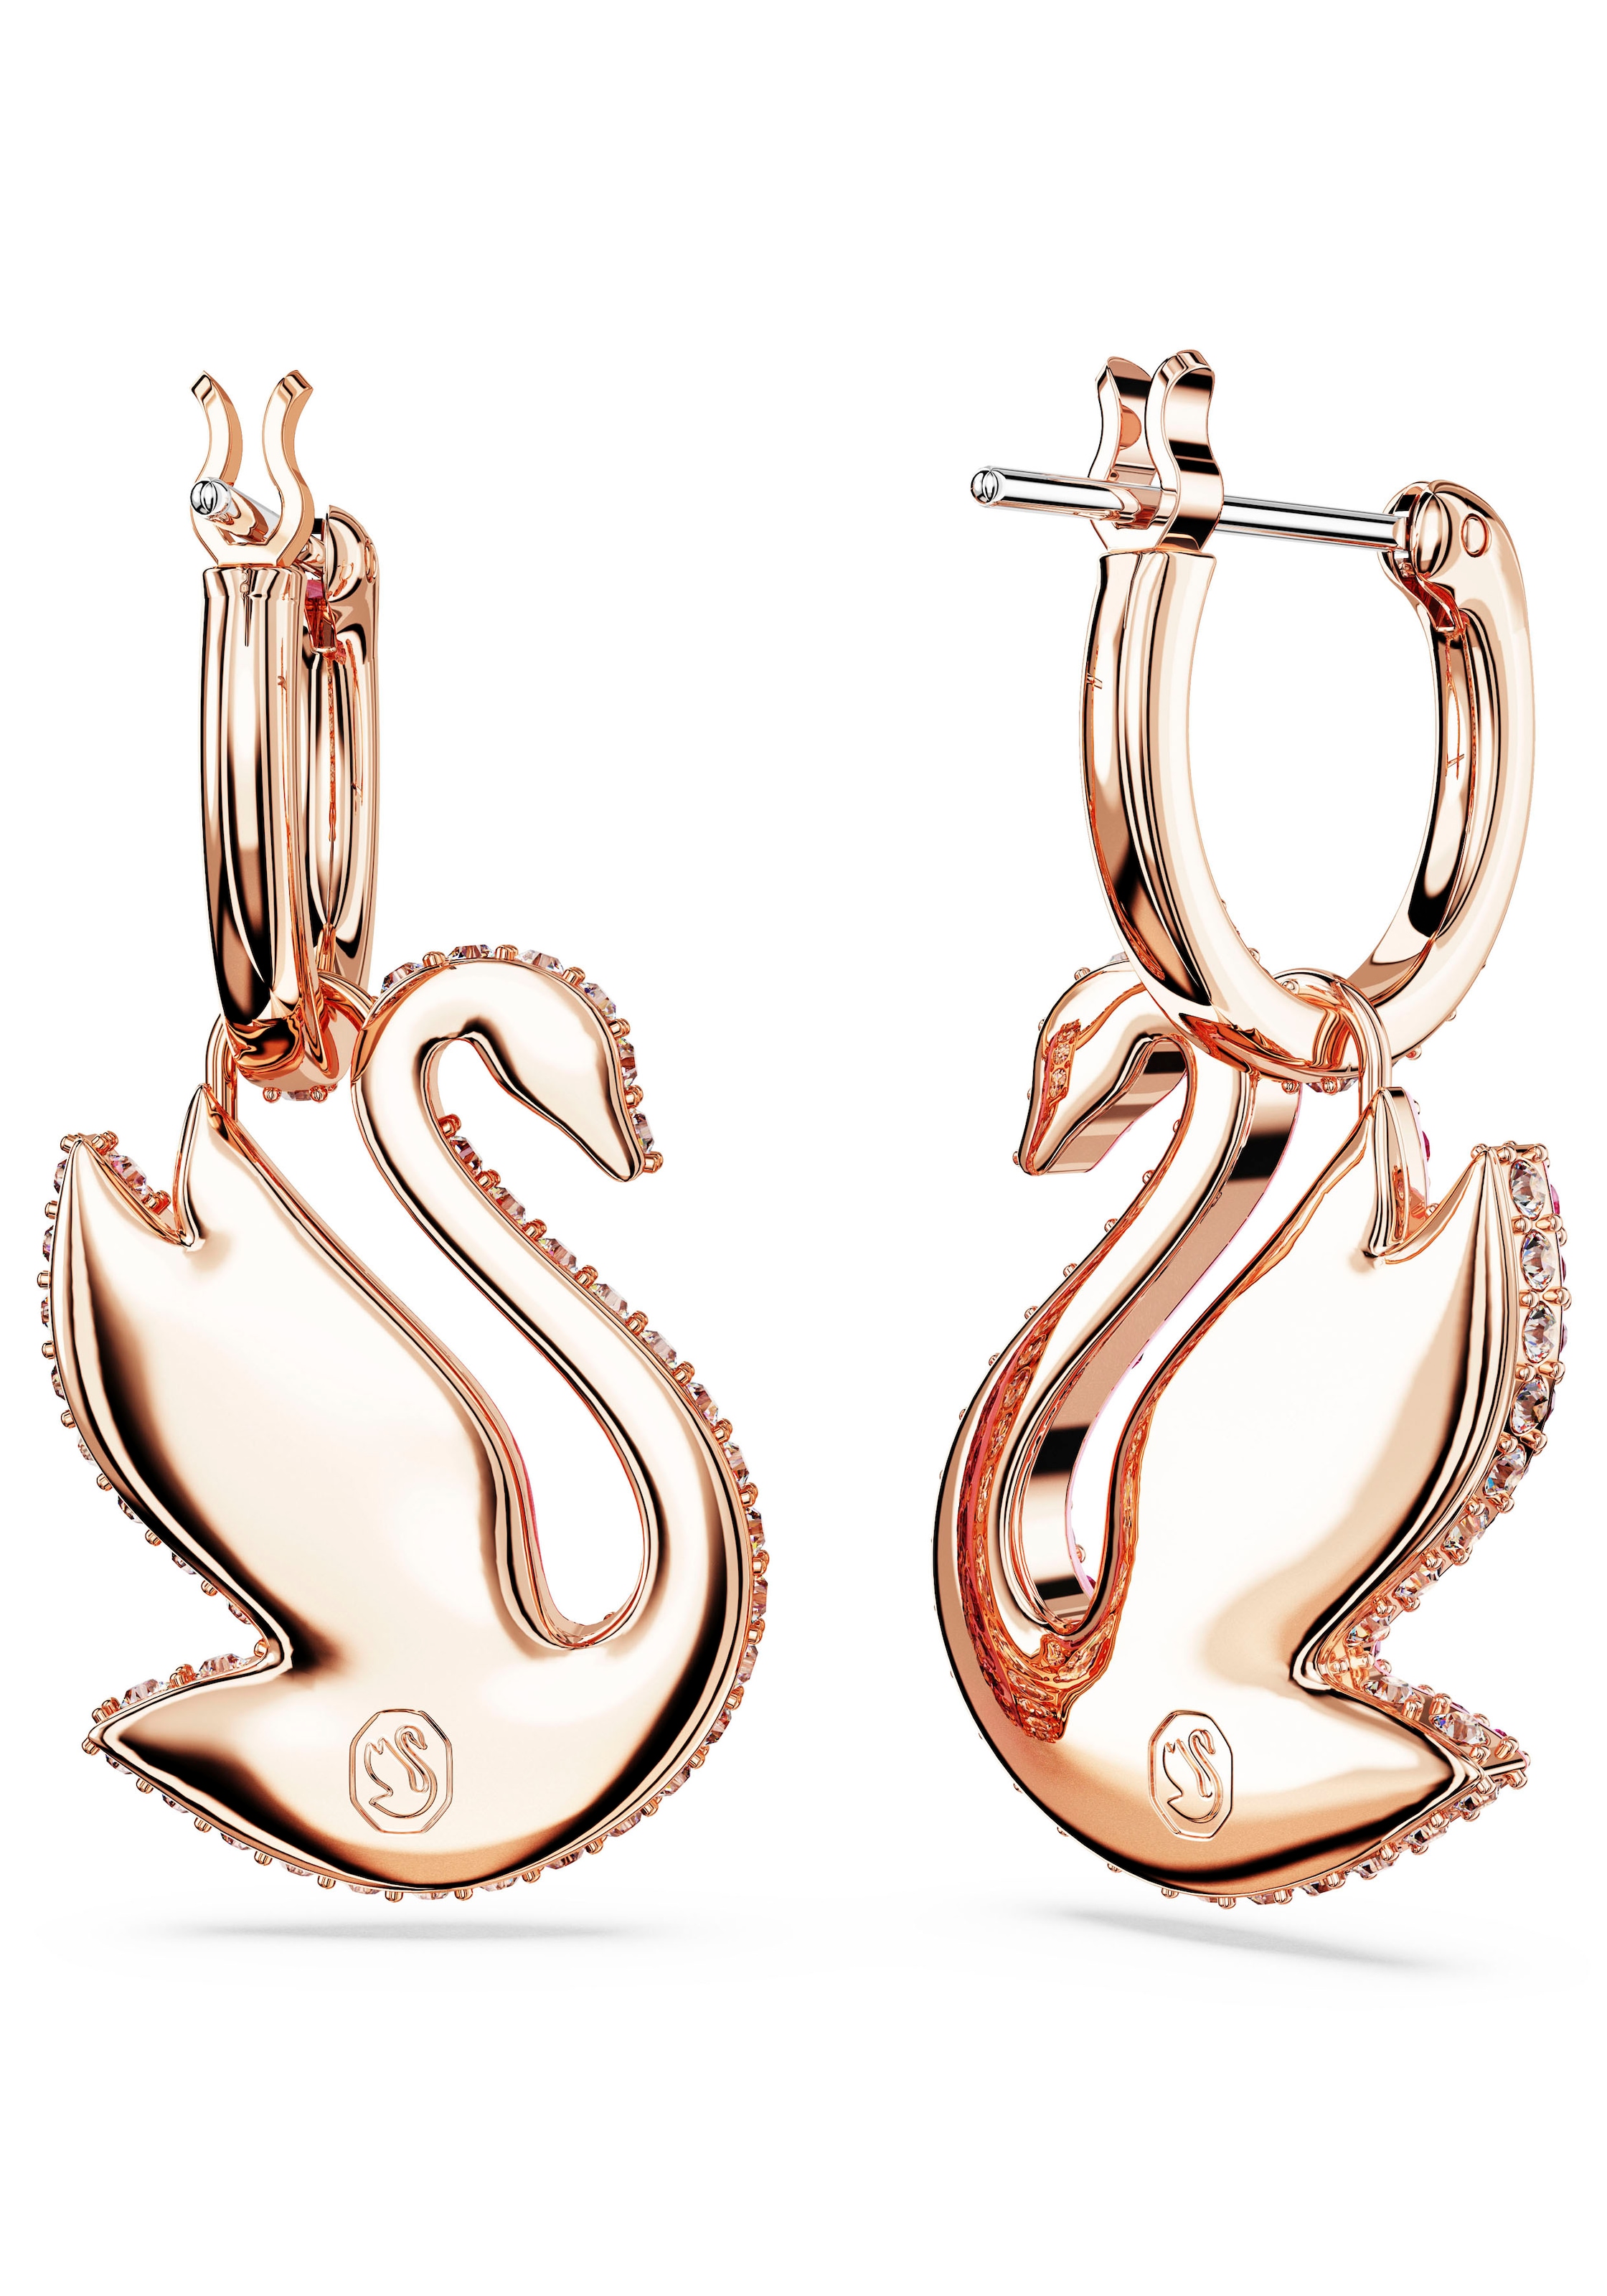 Swarovski Paar Ohrhänger »Swarovski Iconic Swan Drop-Ohrhänger, 5647544, 5647545«, mit Swarovski® Kristall - Einhänger abnehmbar